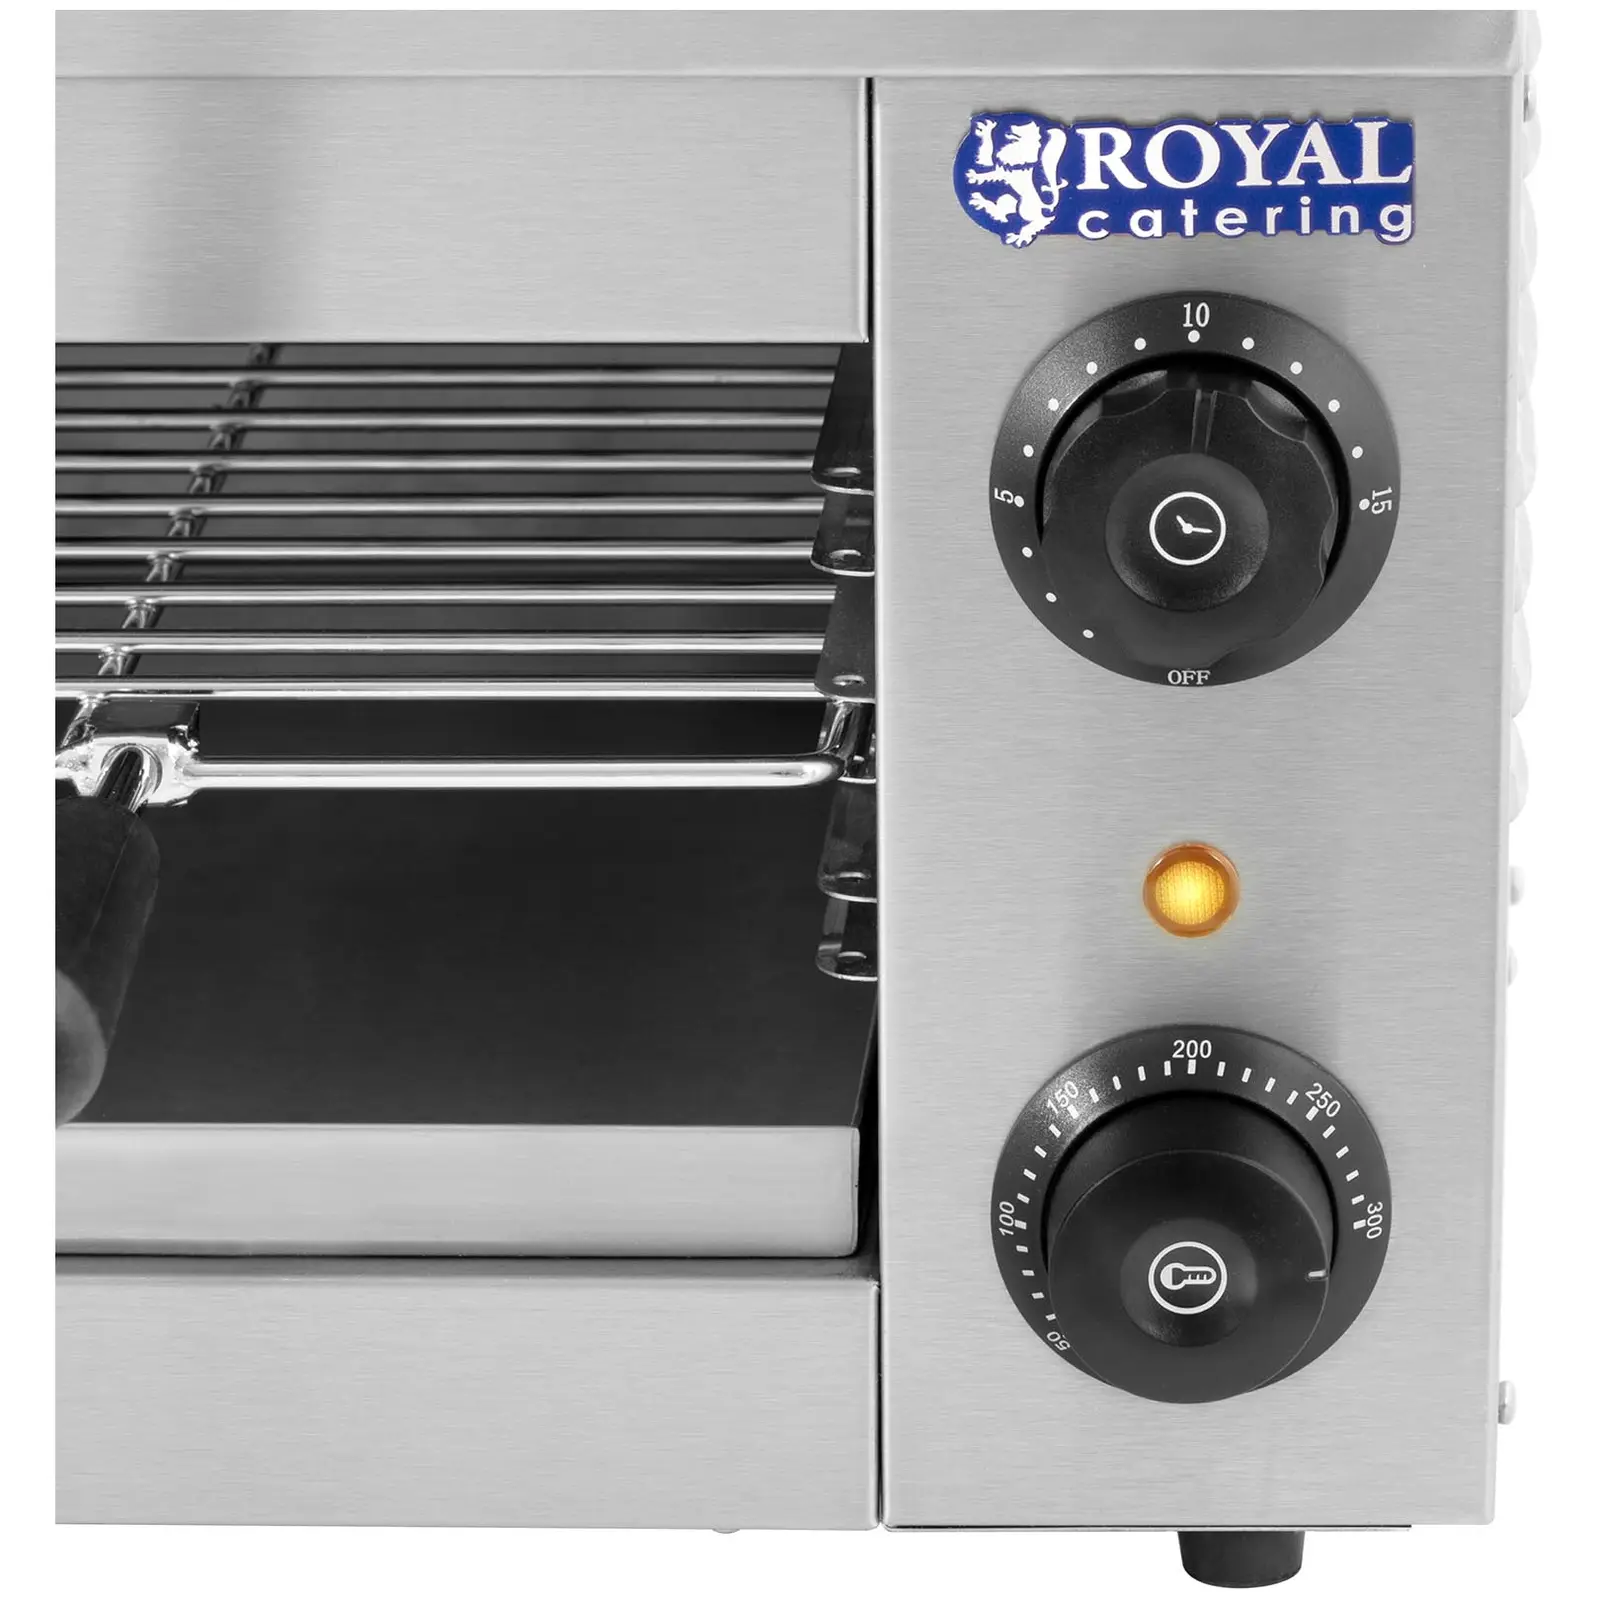 Salamandergrill - 2,000 W - Royal Catering - 50 - 300 °C